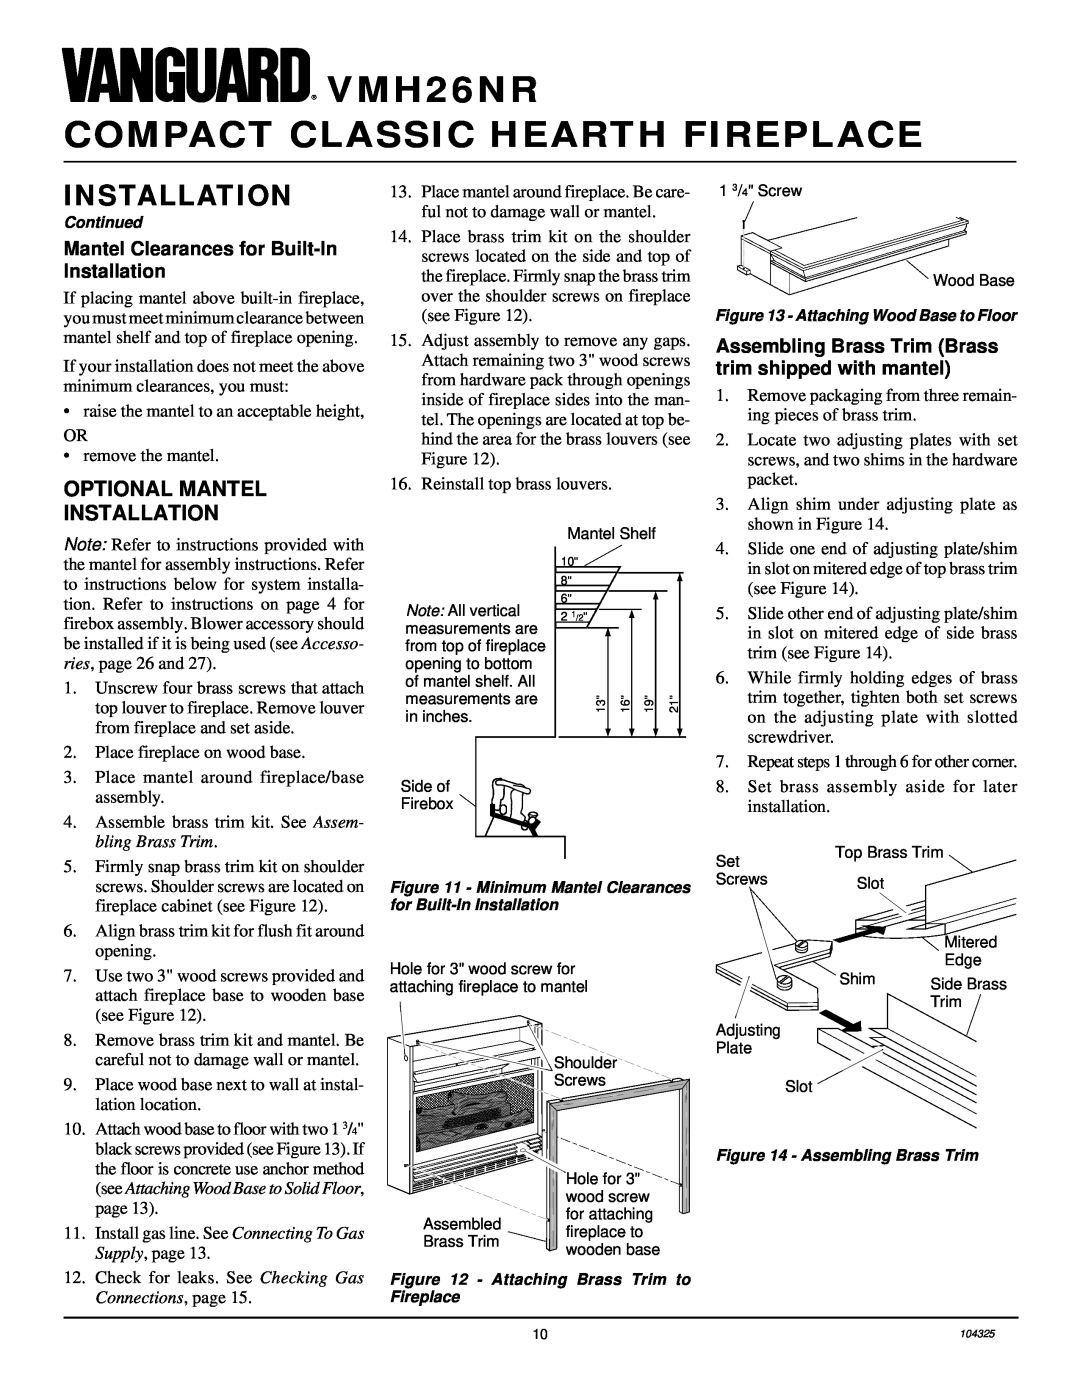 Vanguard Heating VMH26NR installation manual Optional Mantel Installation, Mantel Clearances for Built-InInstallation 